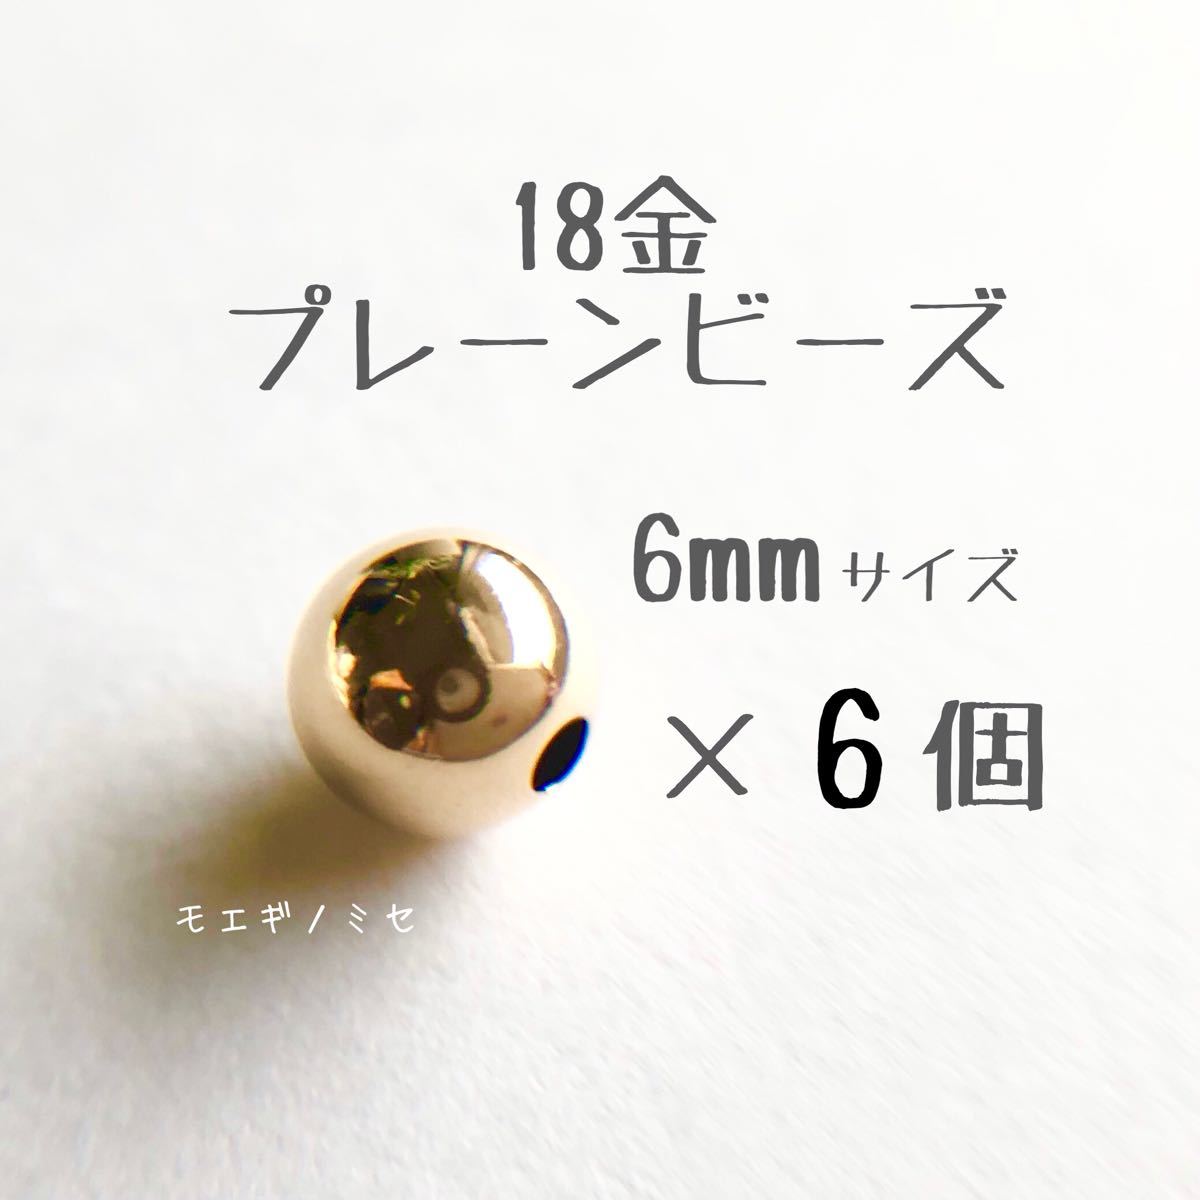 18金 プレーンビーズ6mm 6個セット 日本製 k18 アクセサリーパーツ 18k